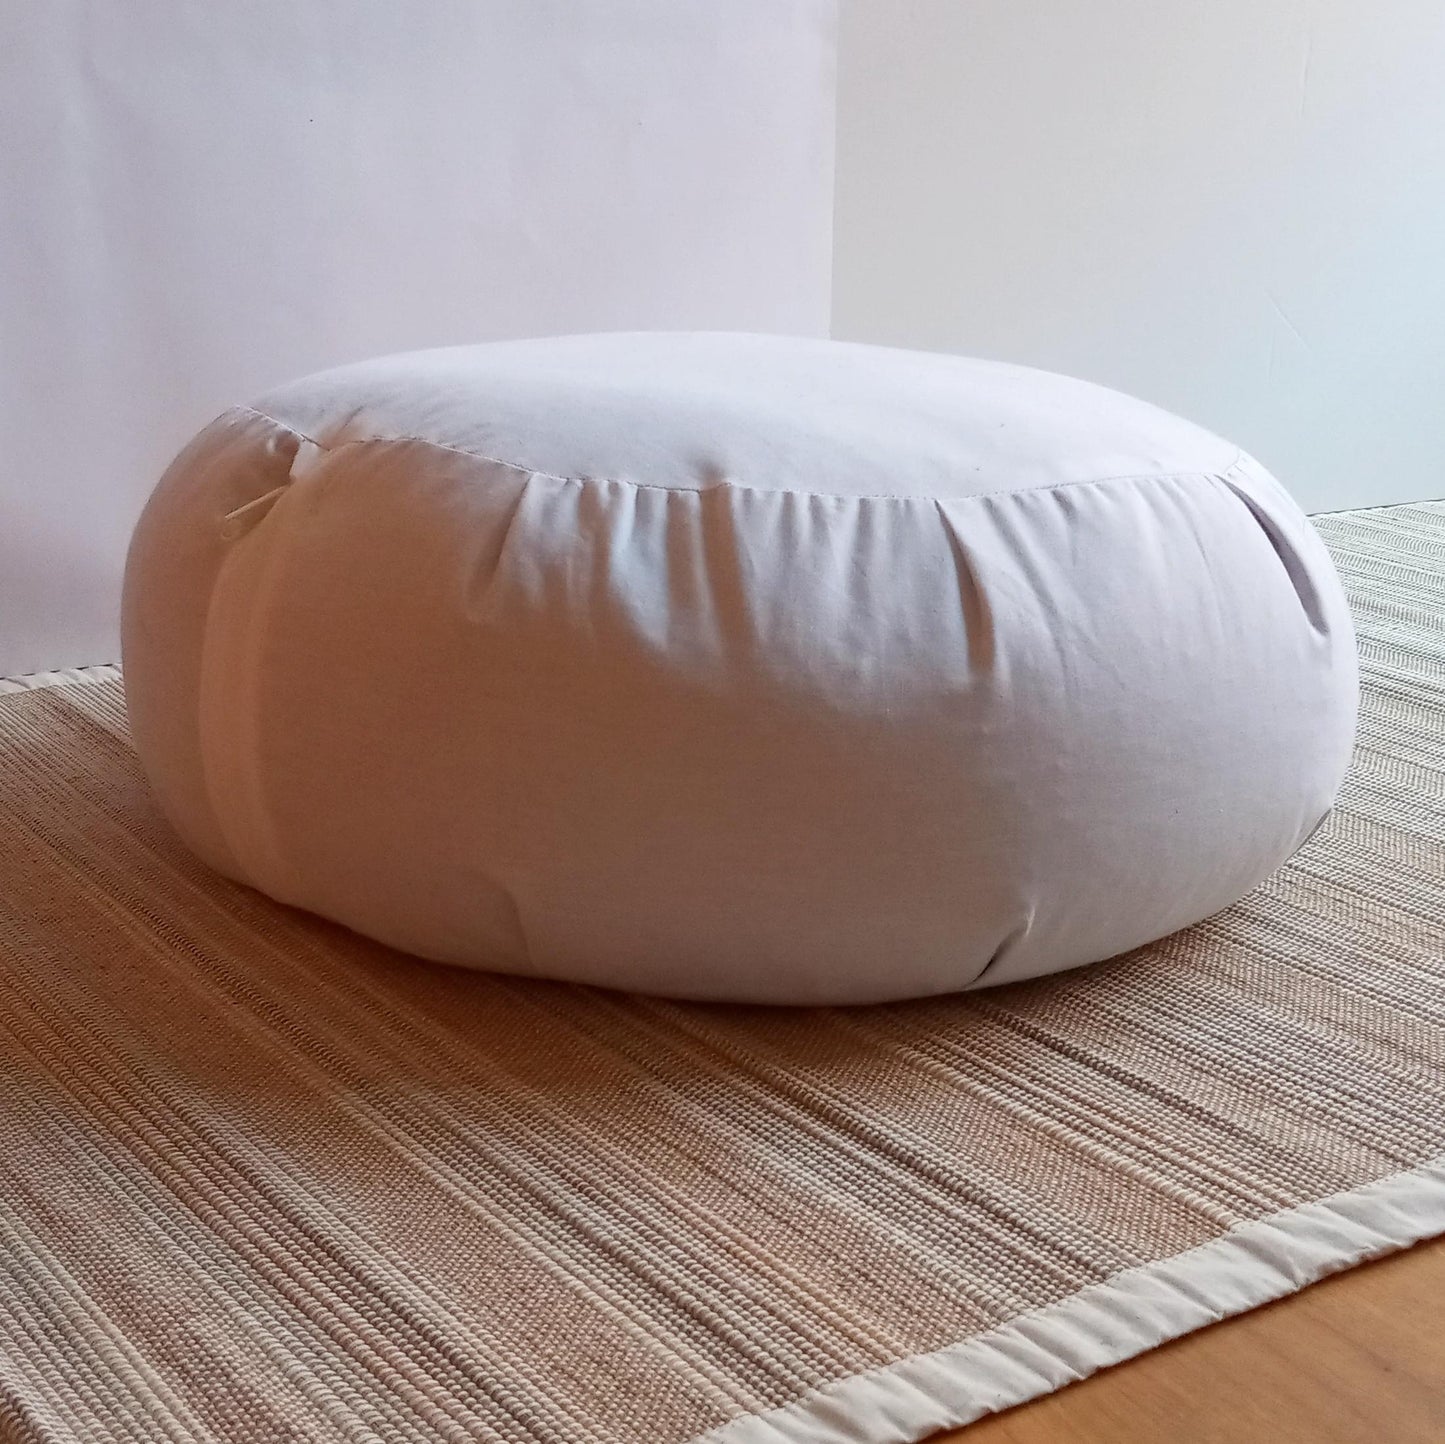 washable meditation cushion